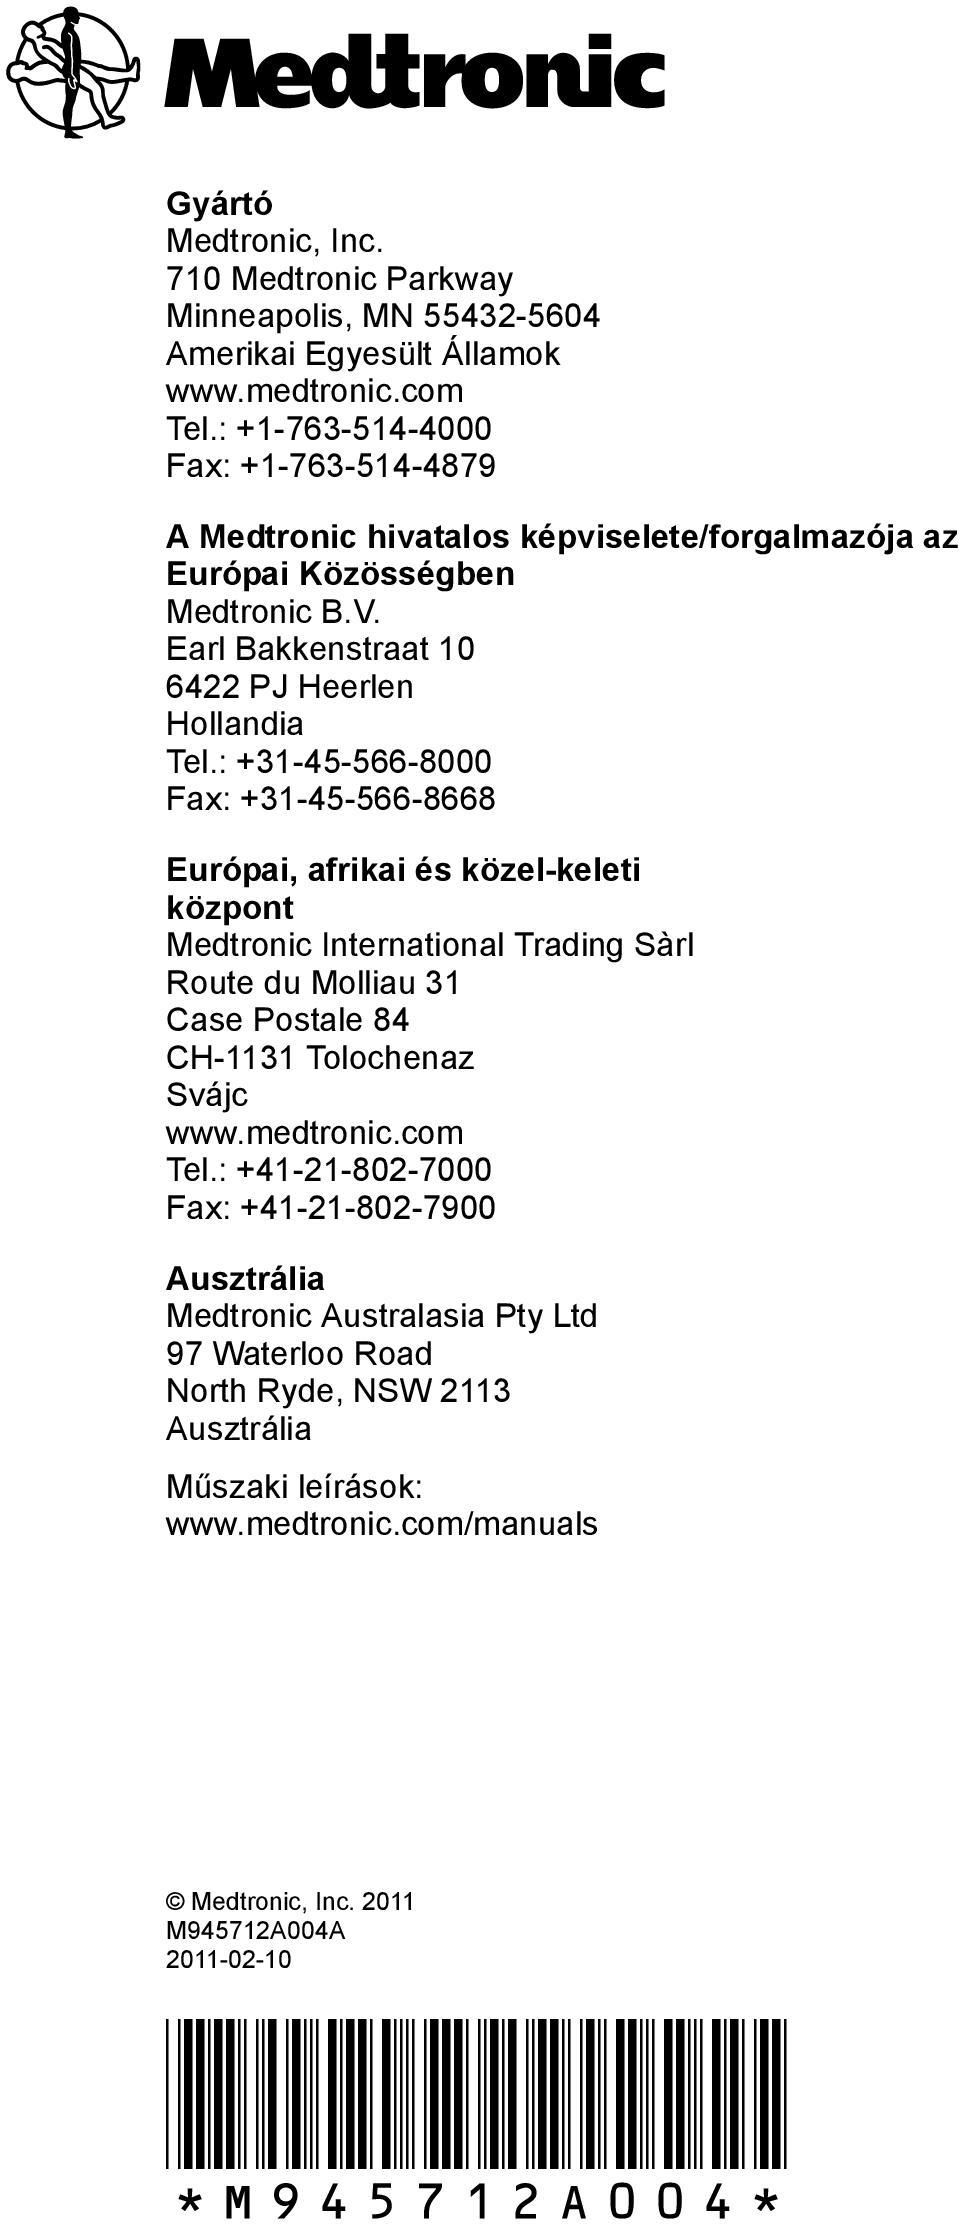 : +31-45-566-8000 Fax: +31-45-566-8668 Európai, afrikai és közel-keleti központ Medtronic International Trading Sàrl Route du Molliau 31 Case Postale 84 CH-1131 Tolochenaz Svájc www.